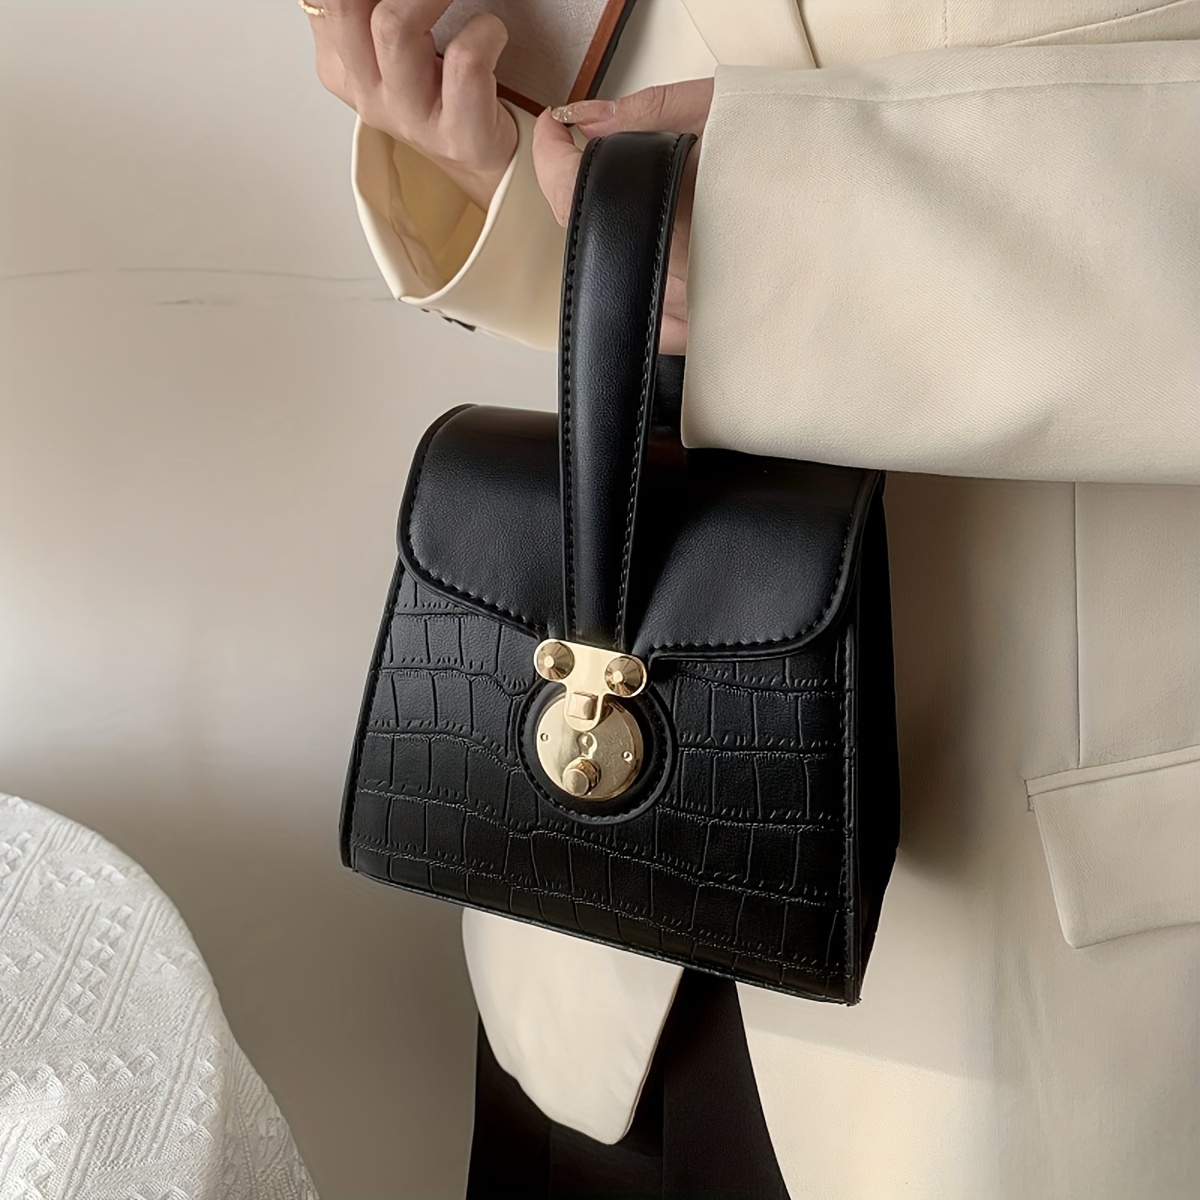 Handbag Female New Crocodile Pattern Design Popular Shoulder Bag